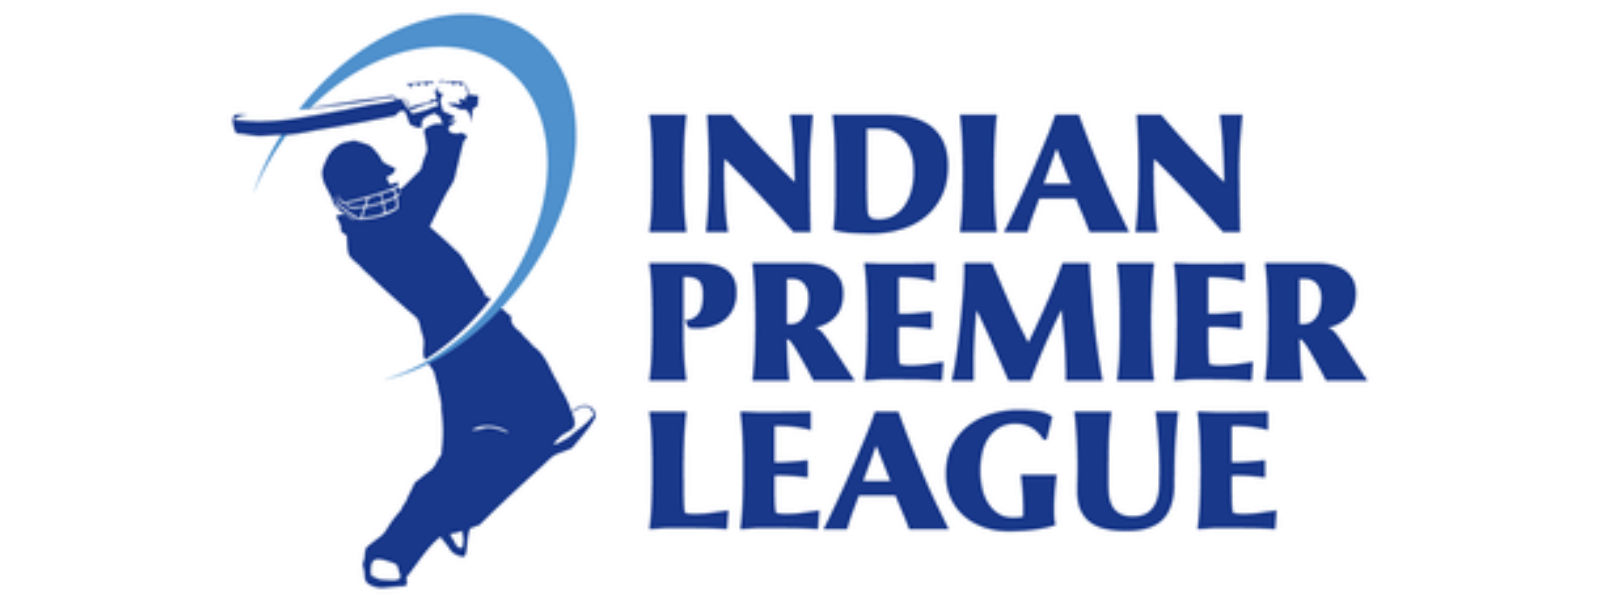 IPL: மும்பை இந்தியன்ஸ் அணி இறுதிப்போட்டிக்கு தகுதி